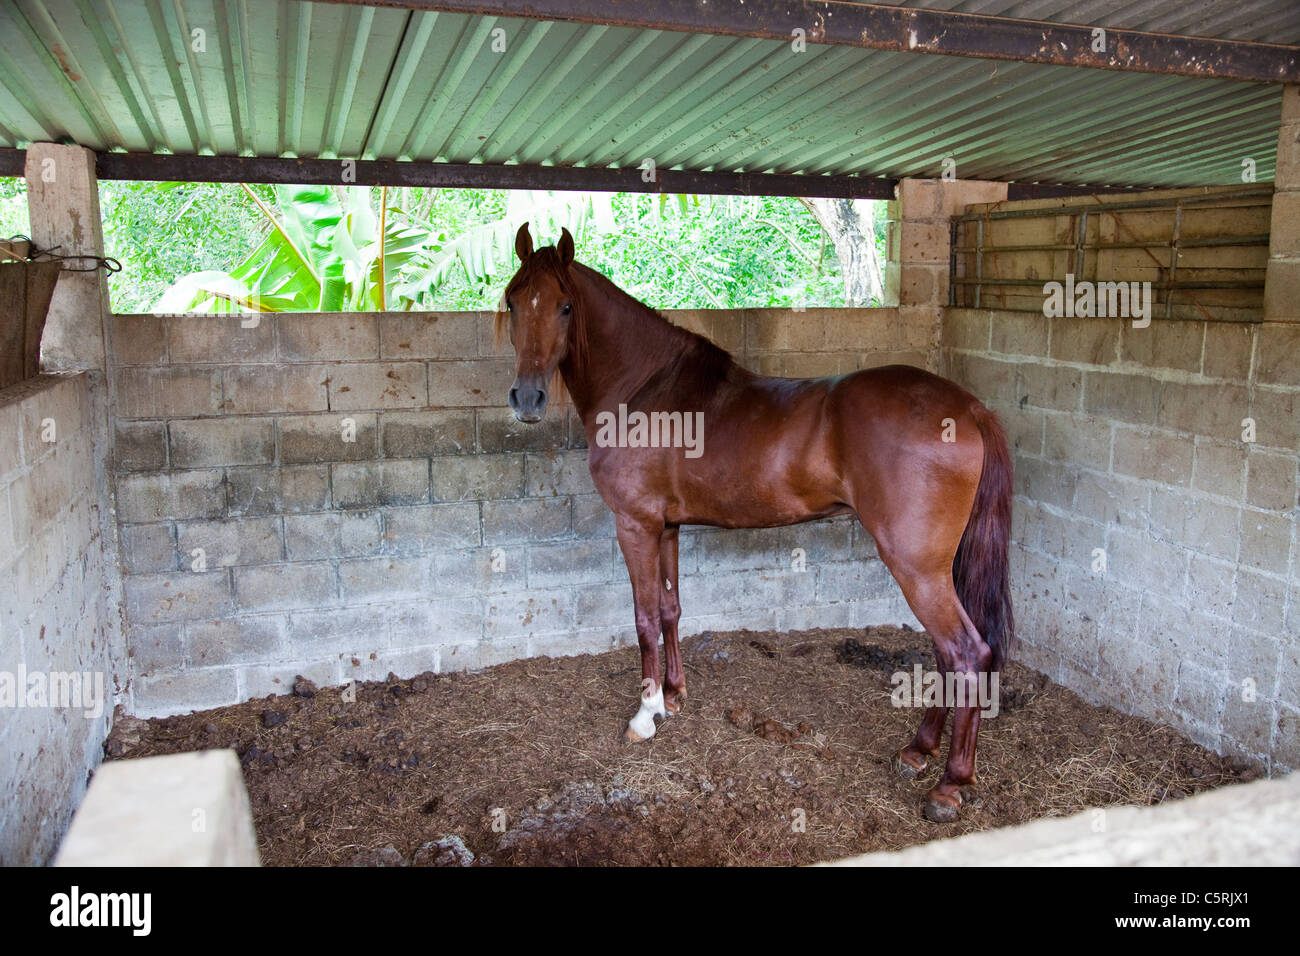 Horse in stable, Canton La Junta, Comalapa, Chalatenango, El Salvador Stock Photo